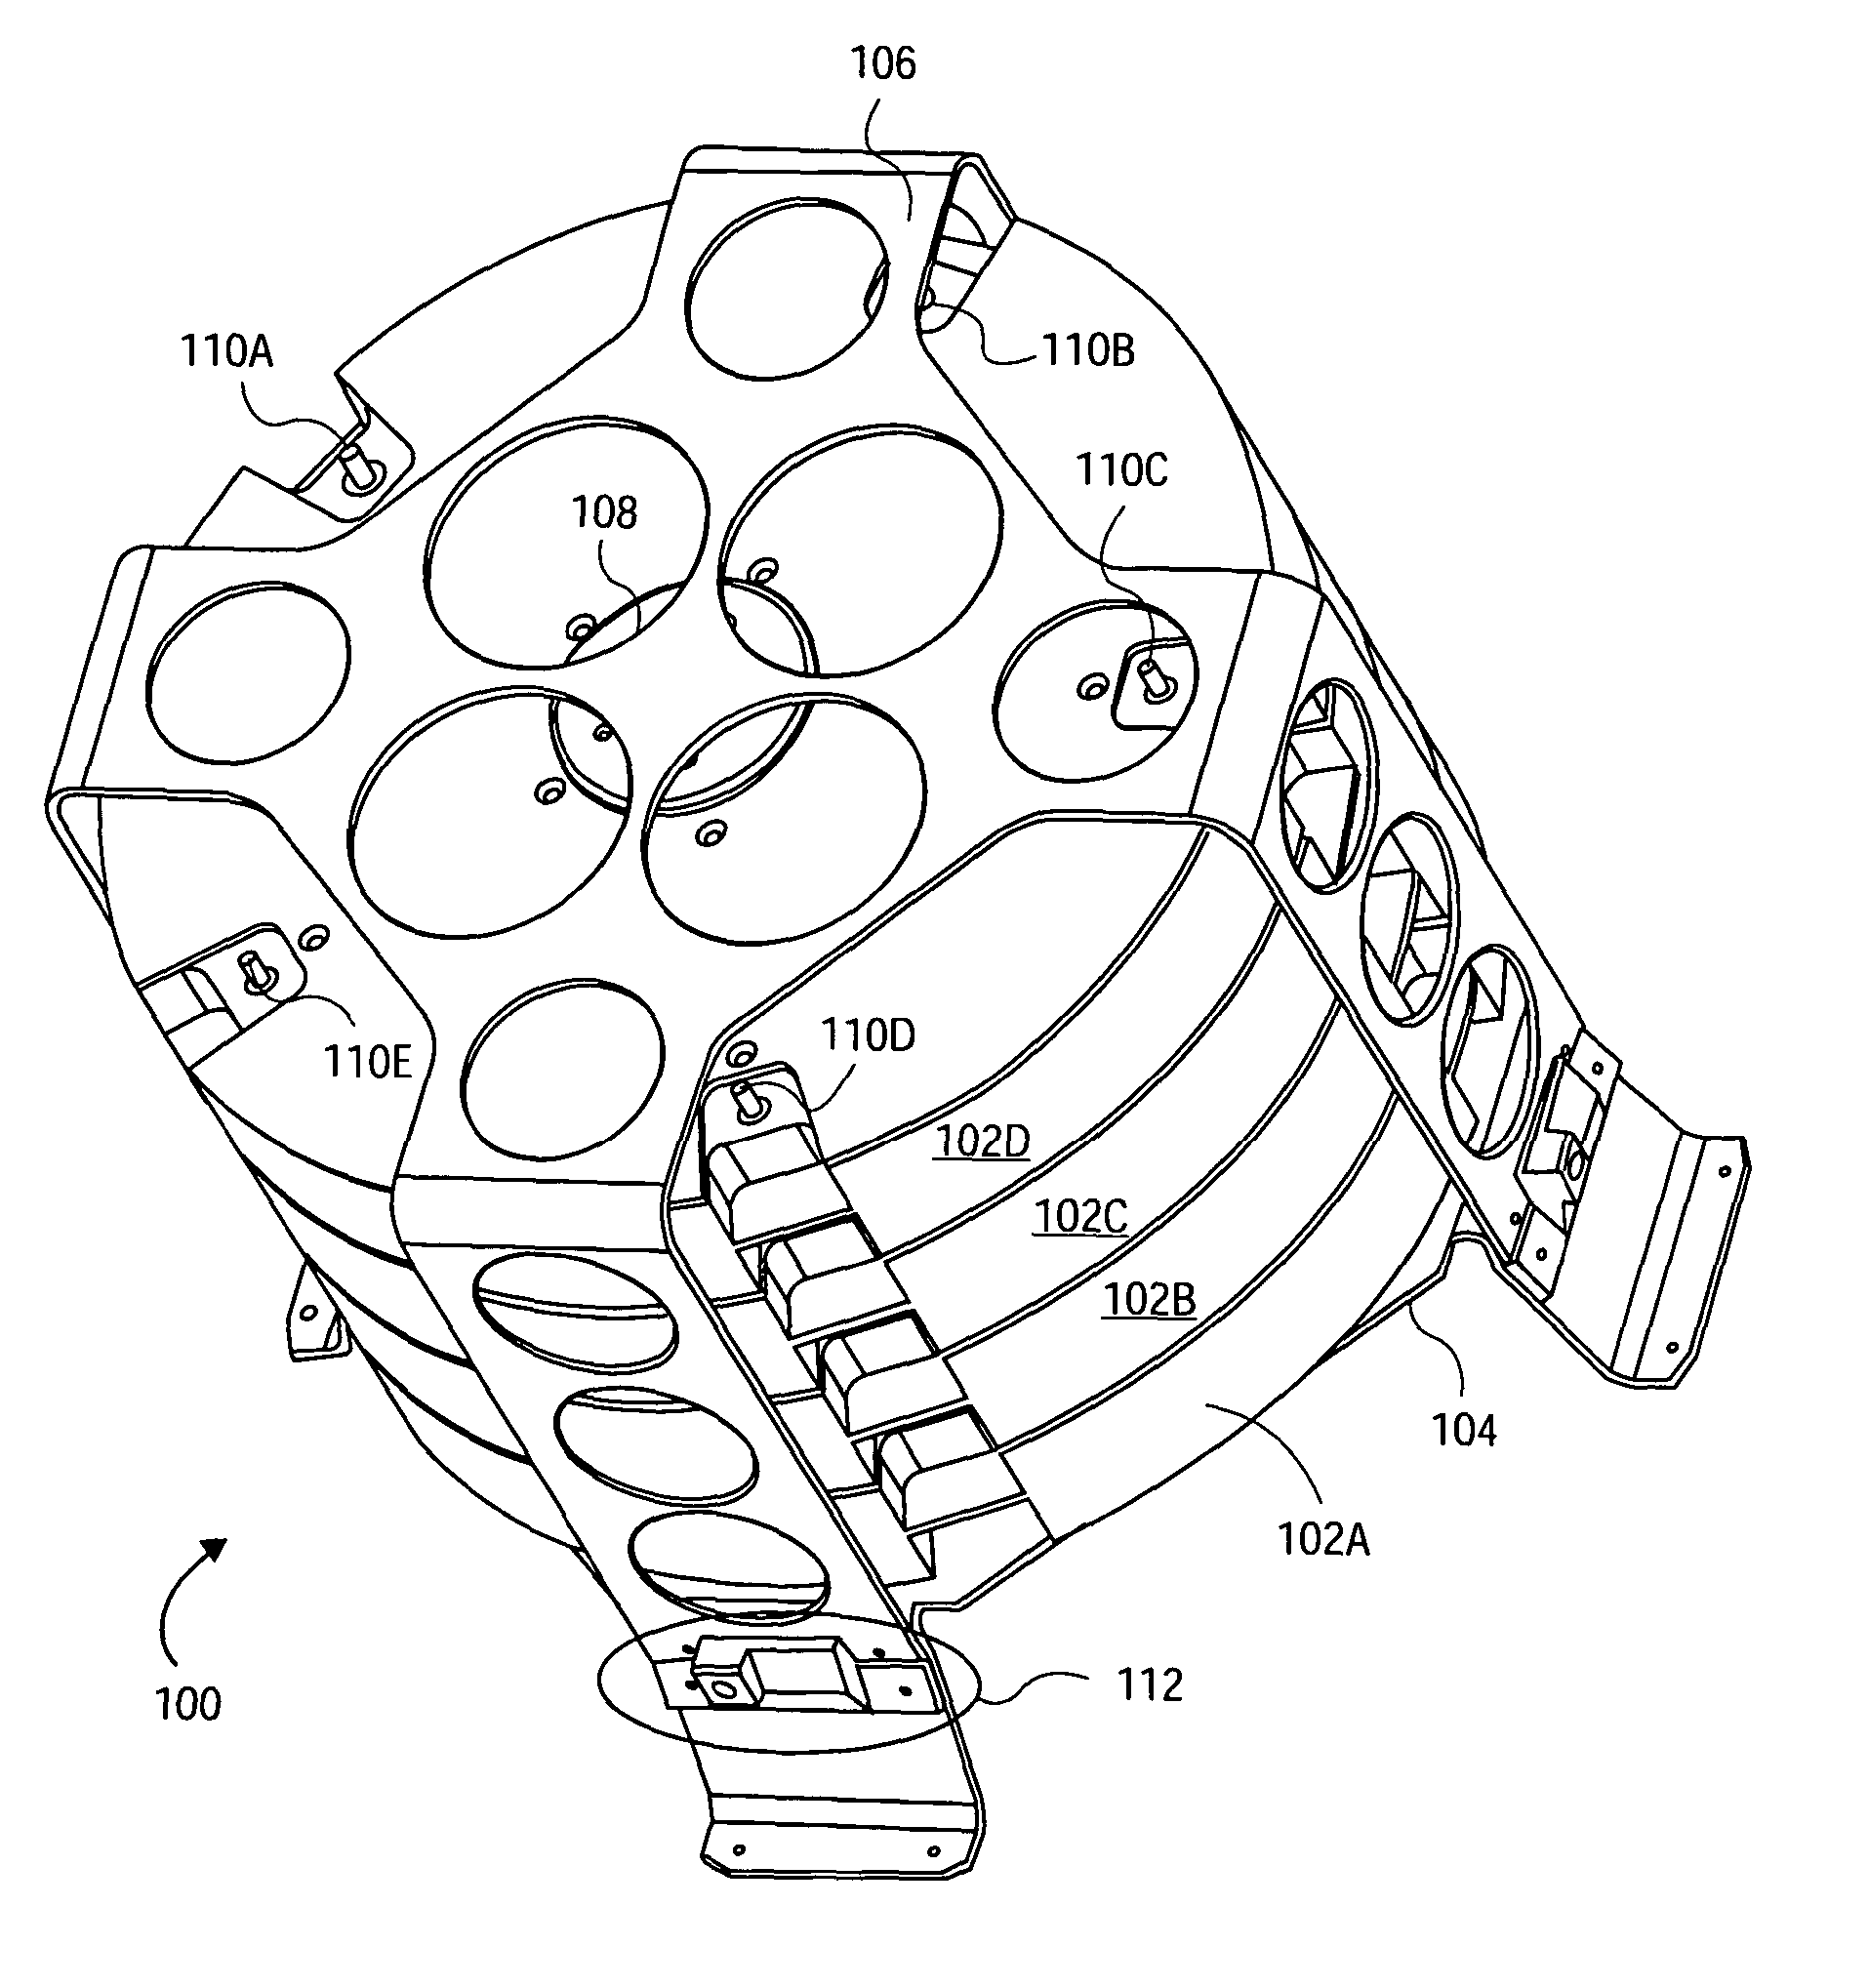 Battery mechanism